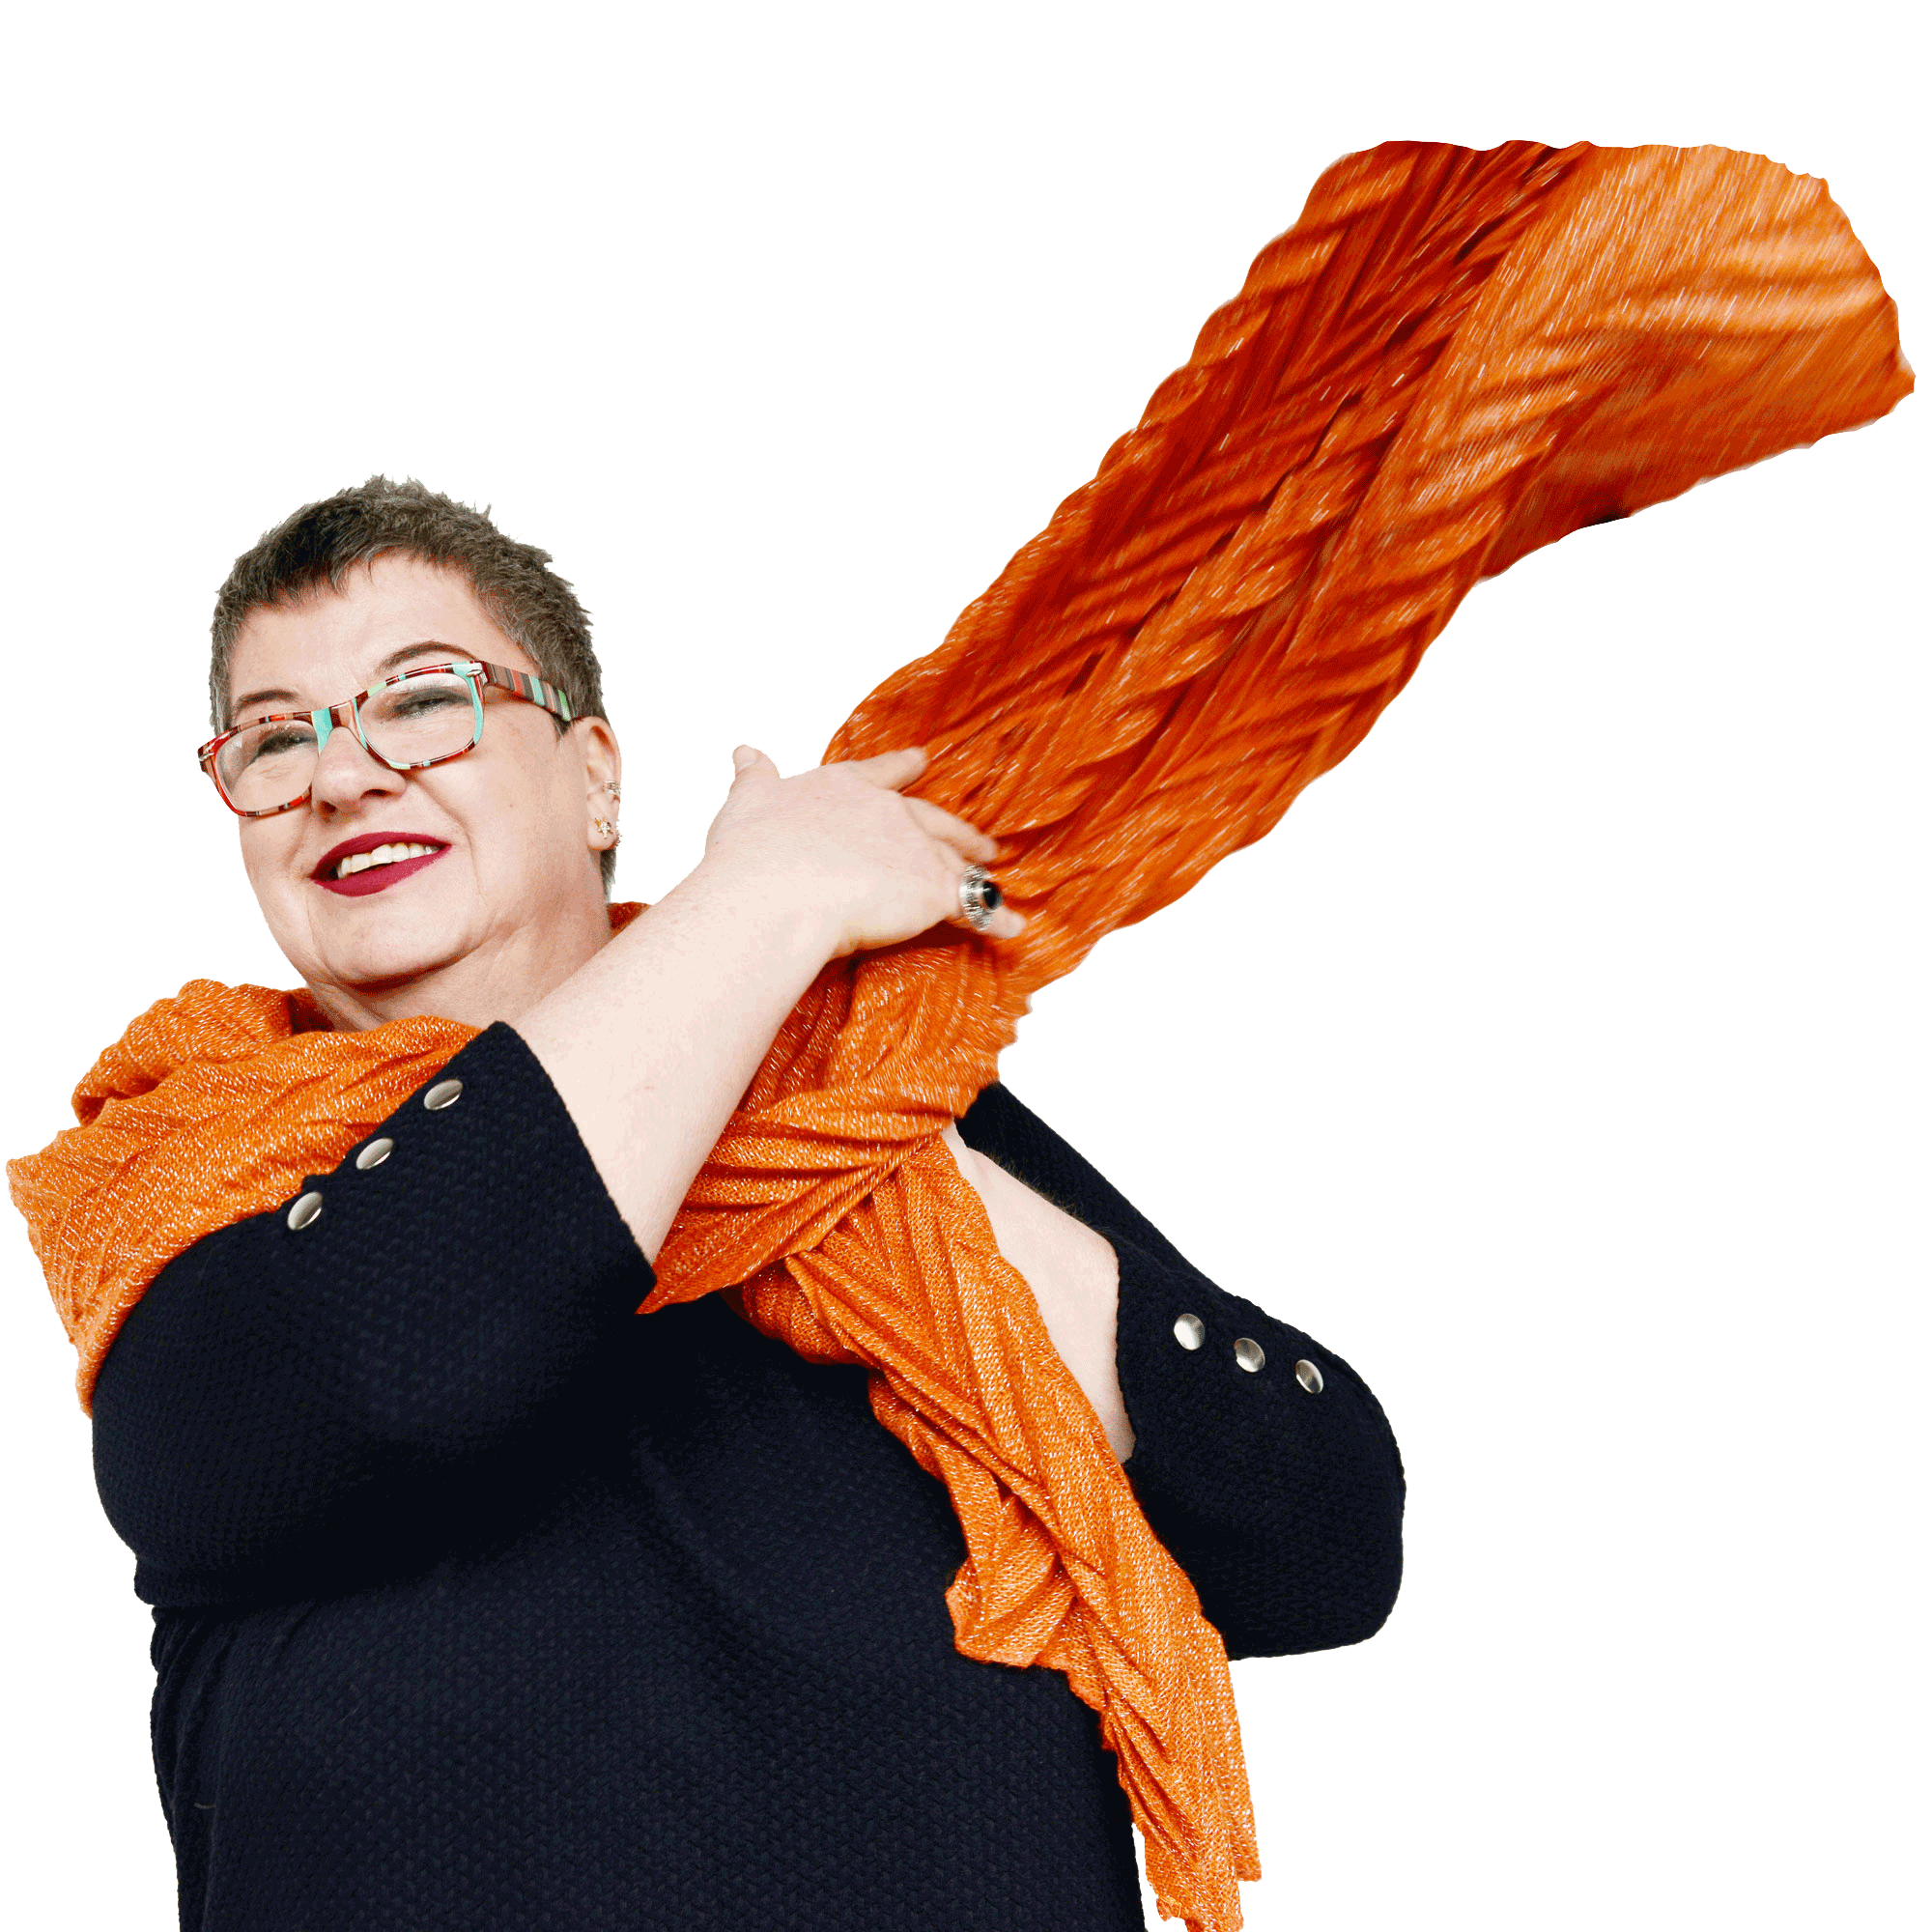 Sonja Schiff oranger Schal fliegt